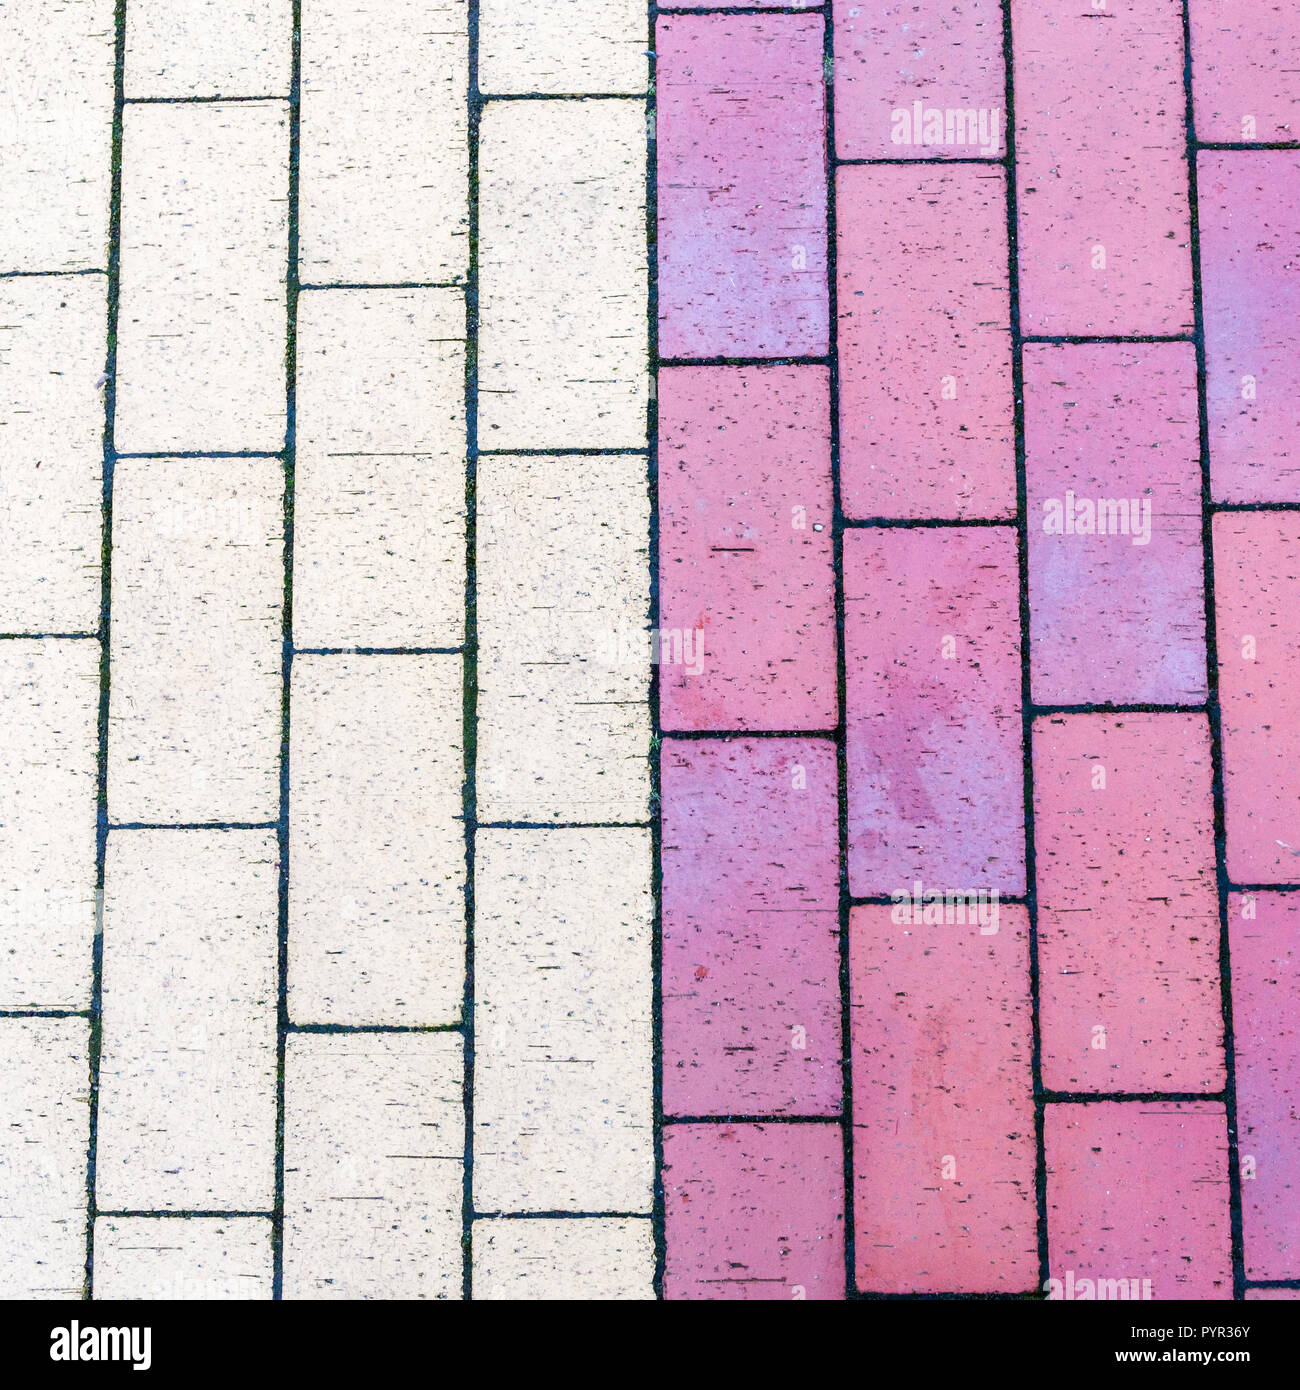 Calcestruzzo colorato textured pavimentazioni, chiudi immagine in alto Foto Stock